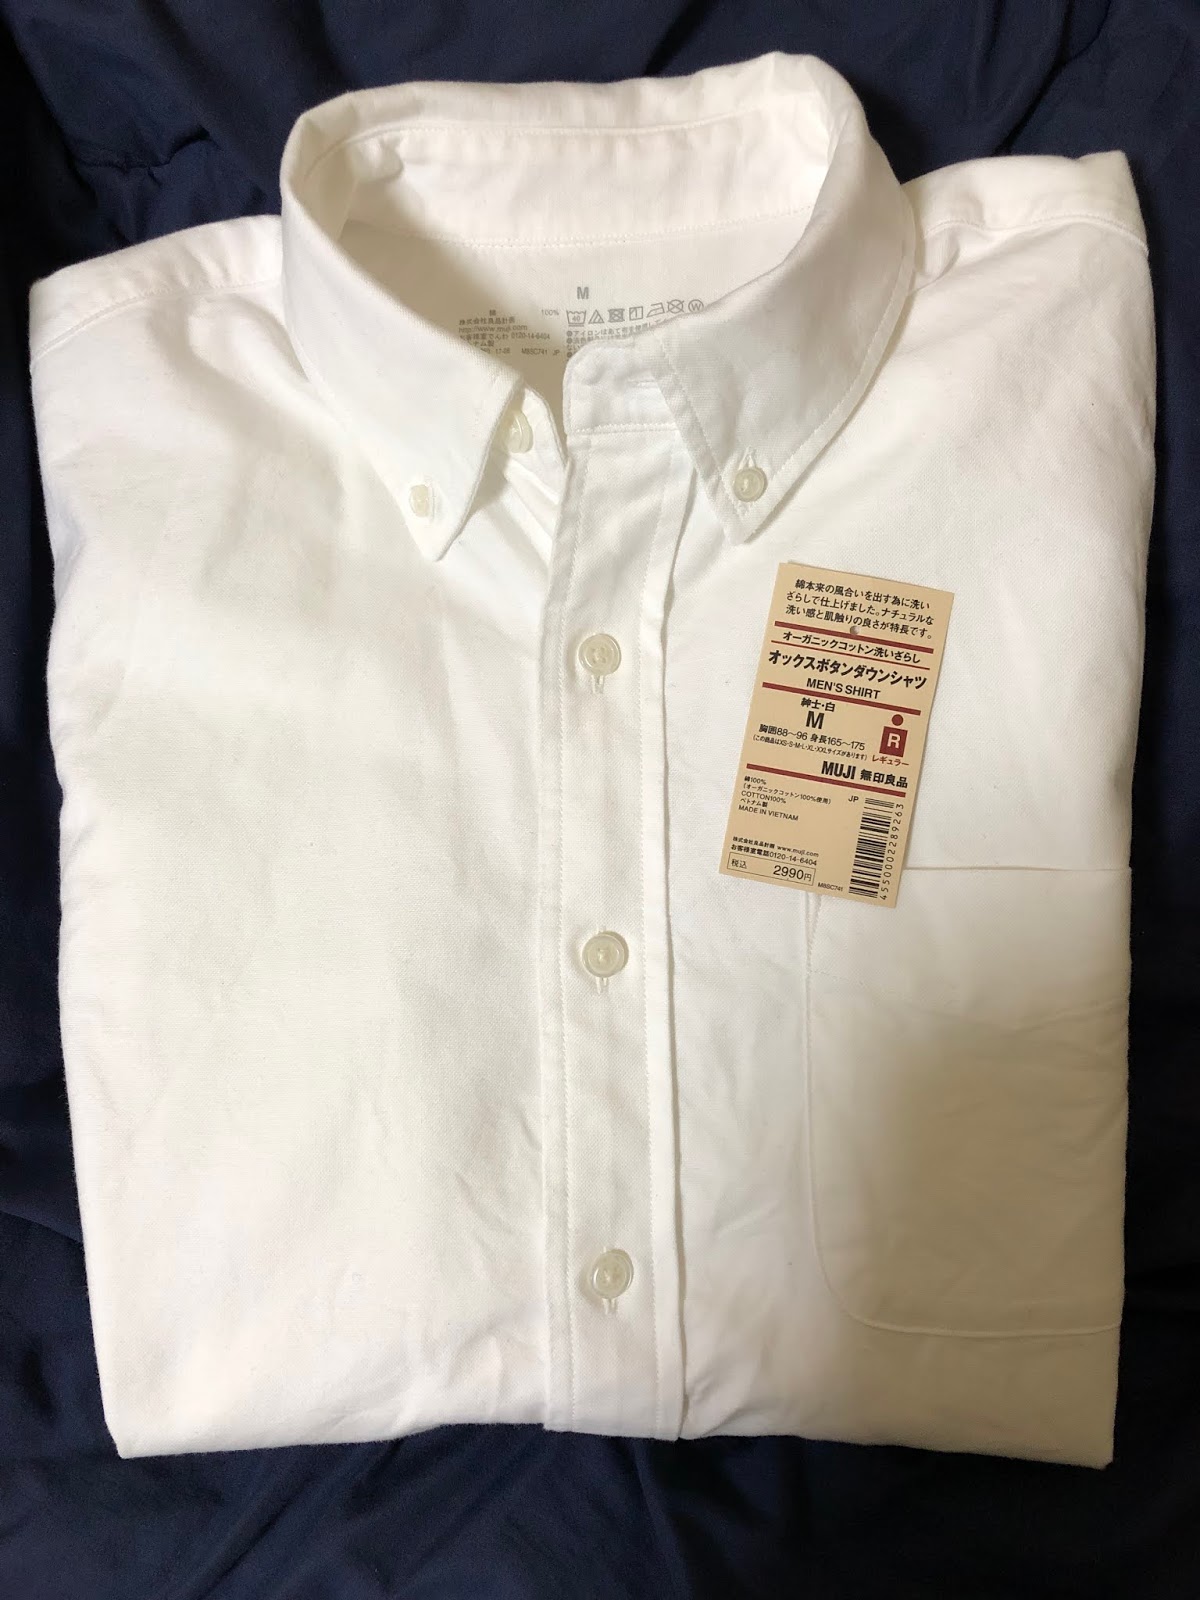 無印良品 評判が良い白シャツを実際に購入し着てみて思った5つの事 好きな事ブログ